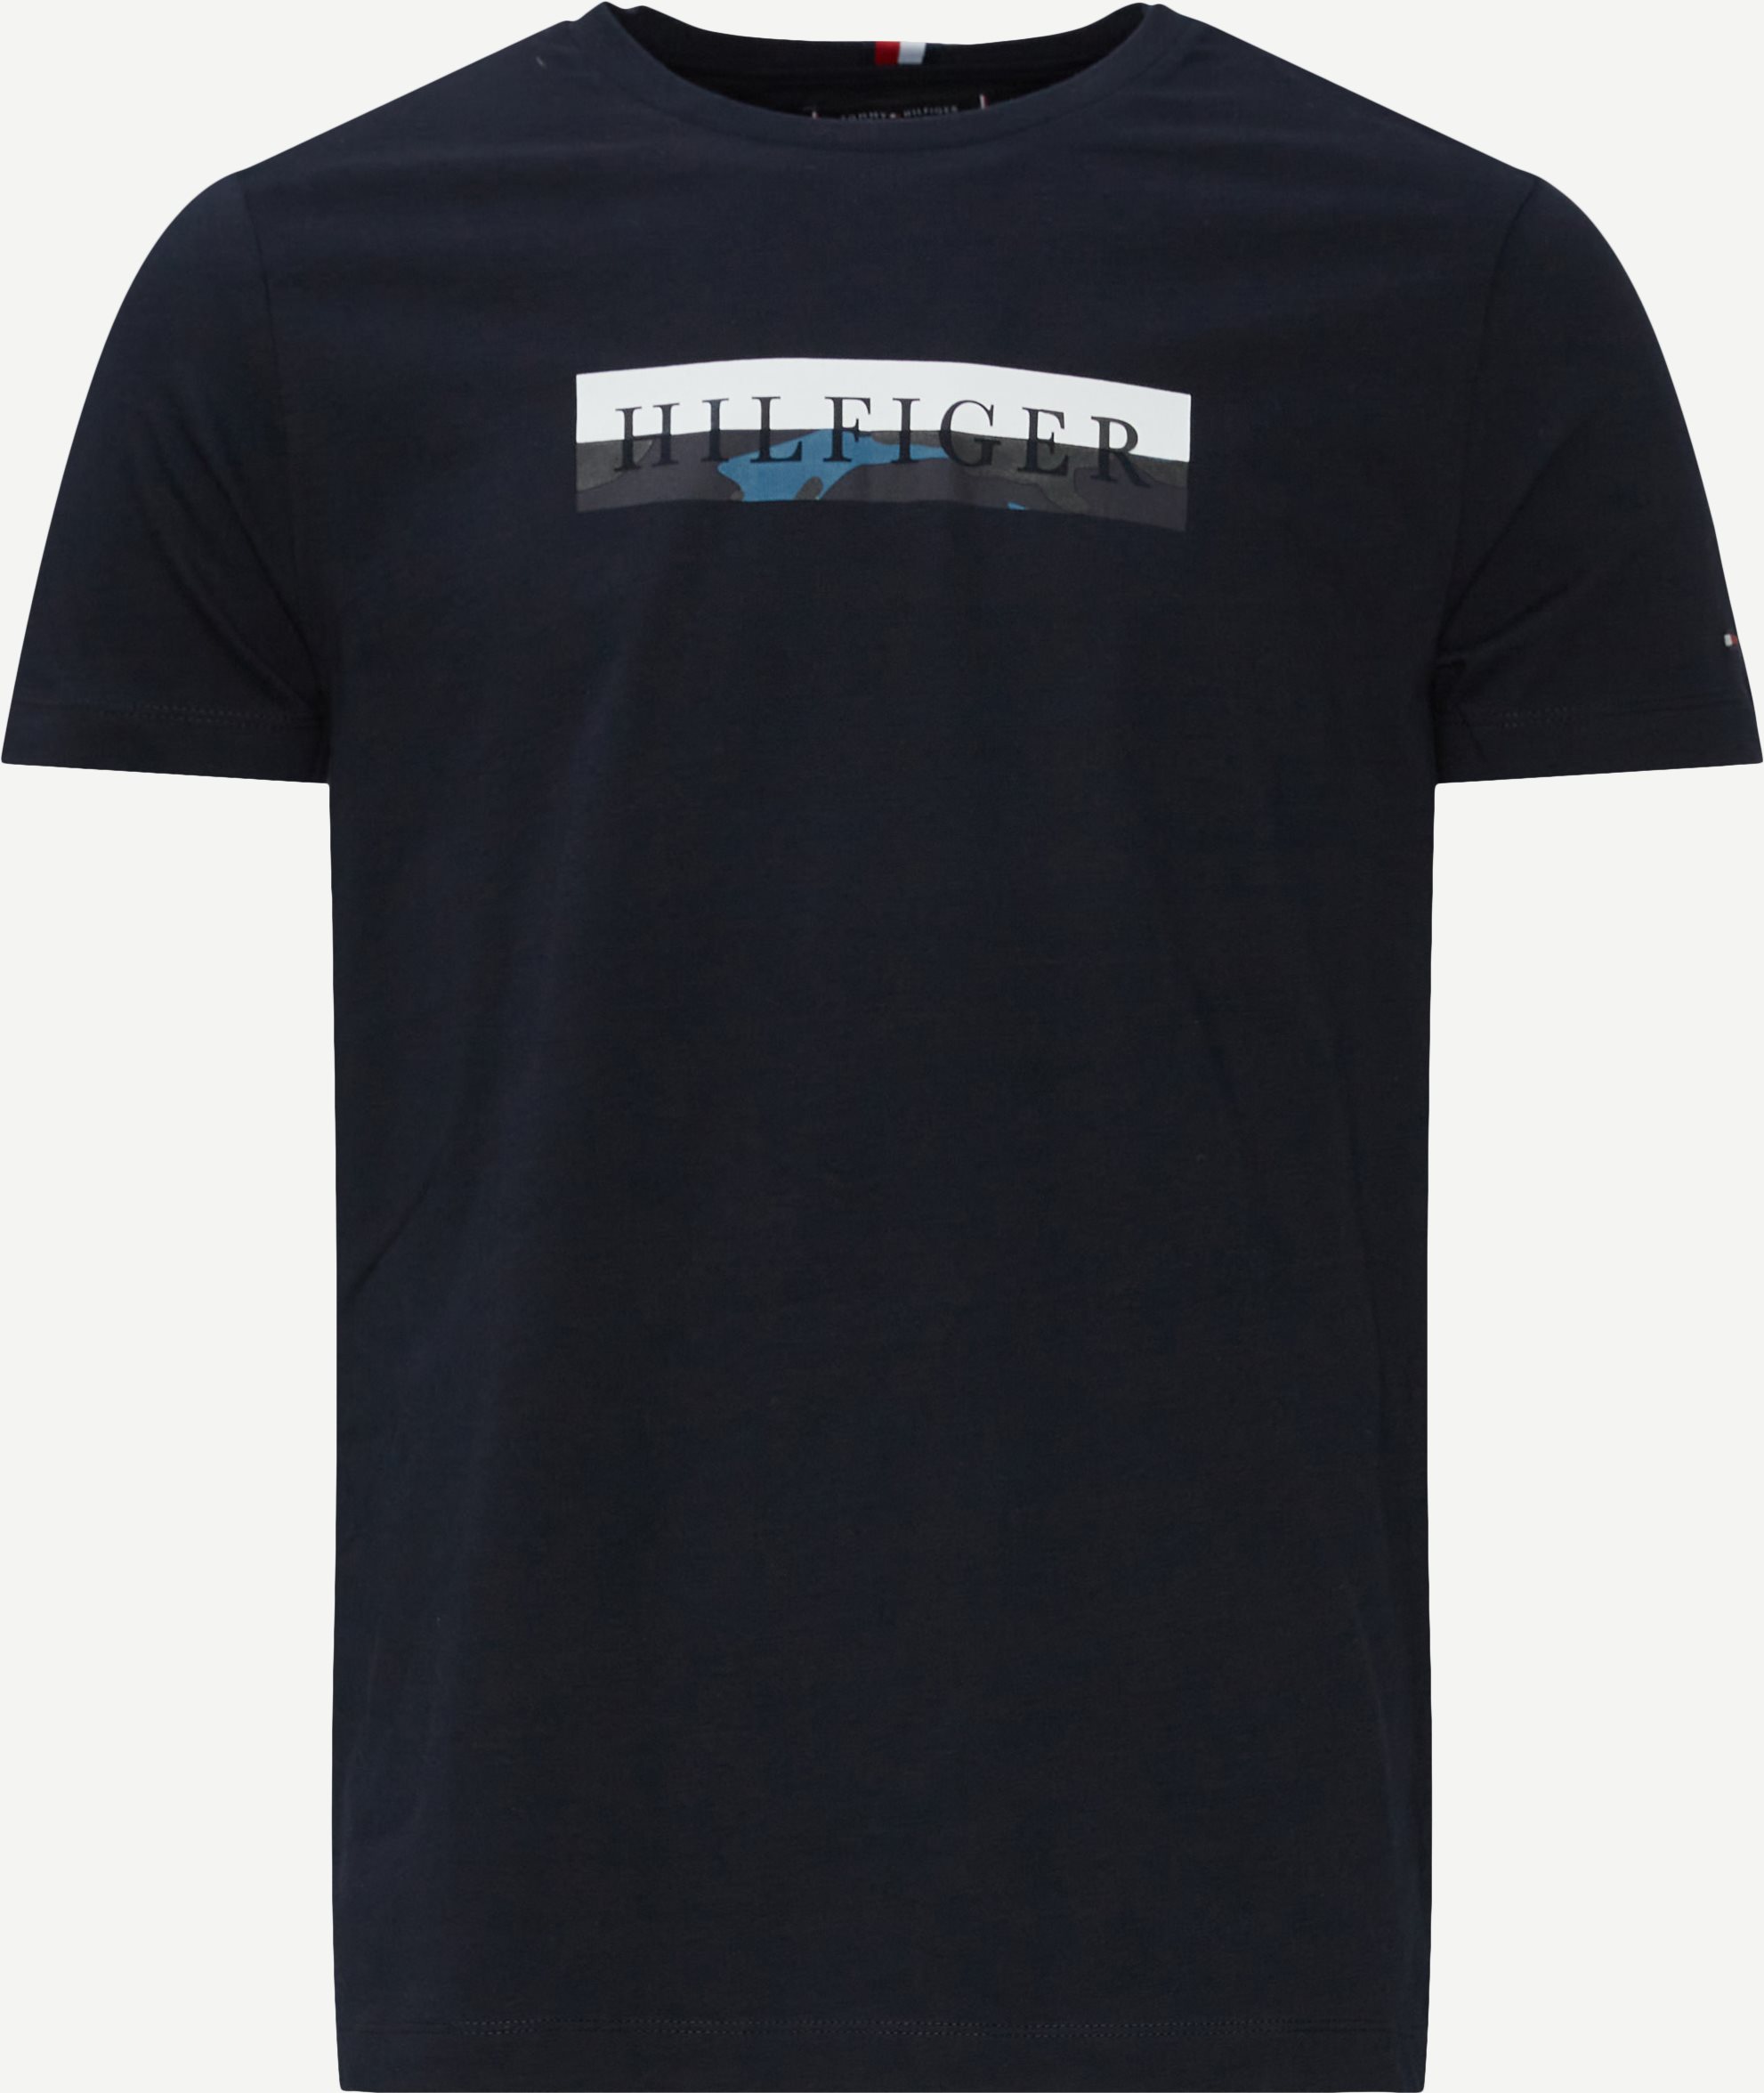 Camo Graphic Tee - T-shirts - Regular fit - Blå